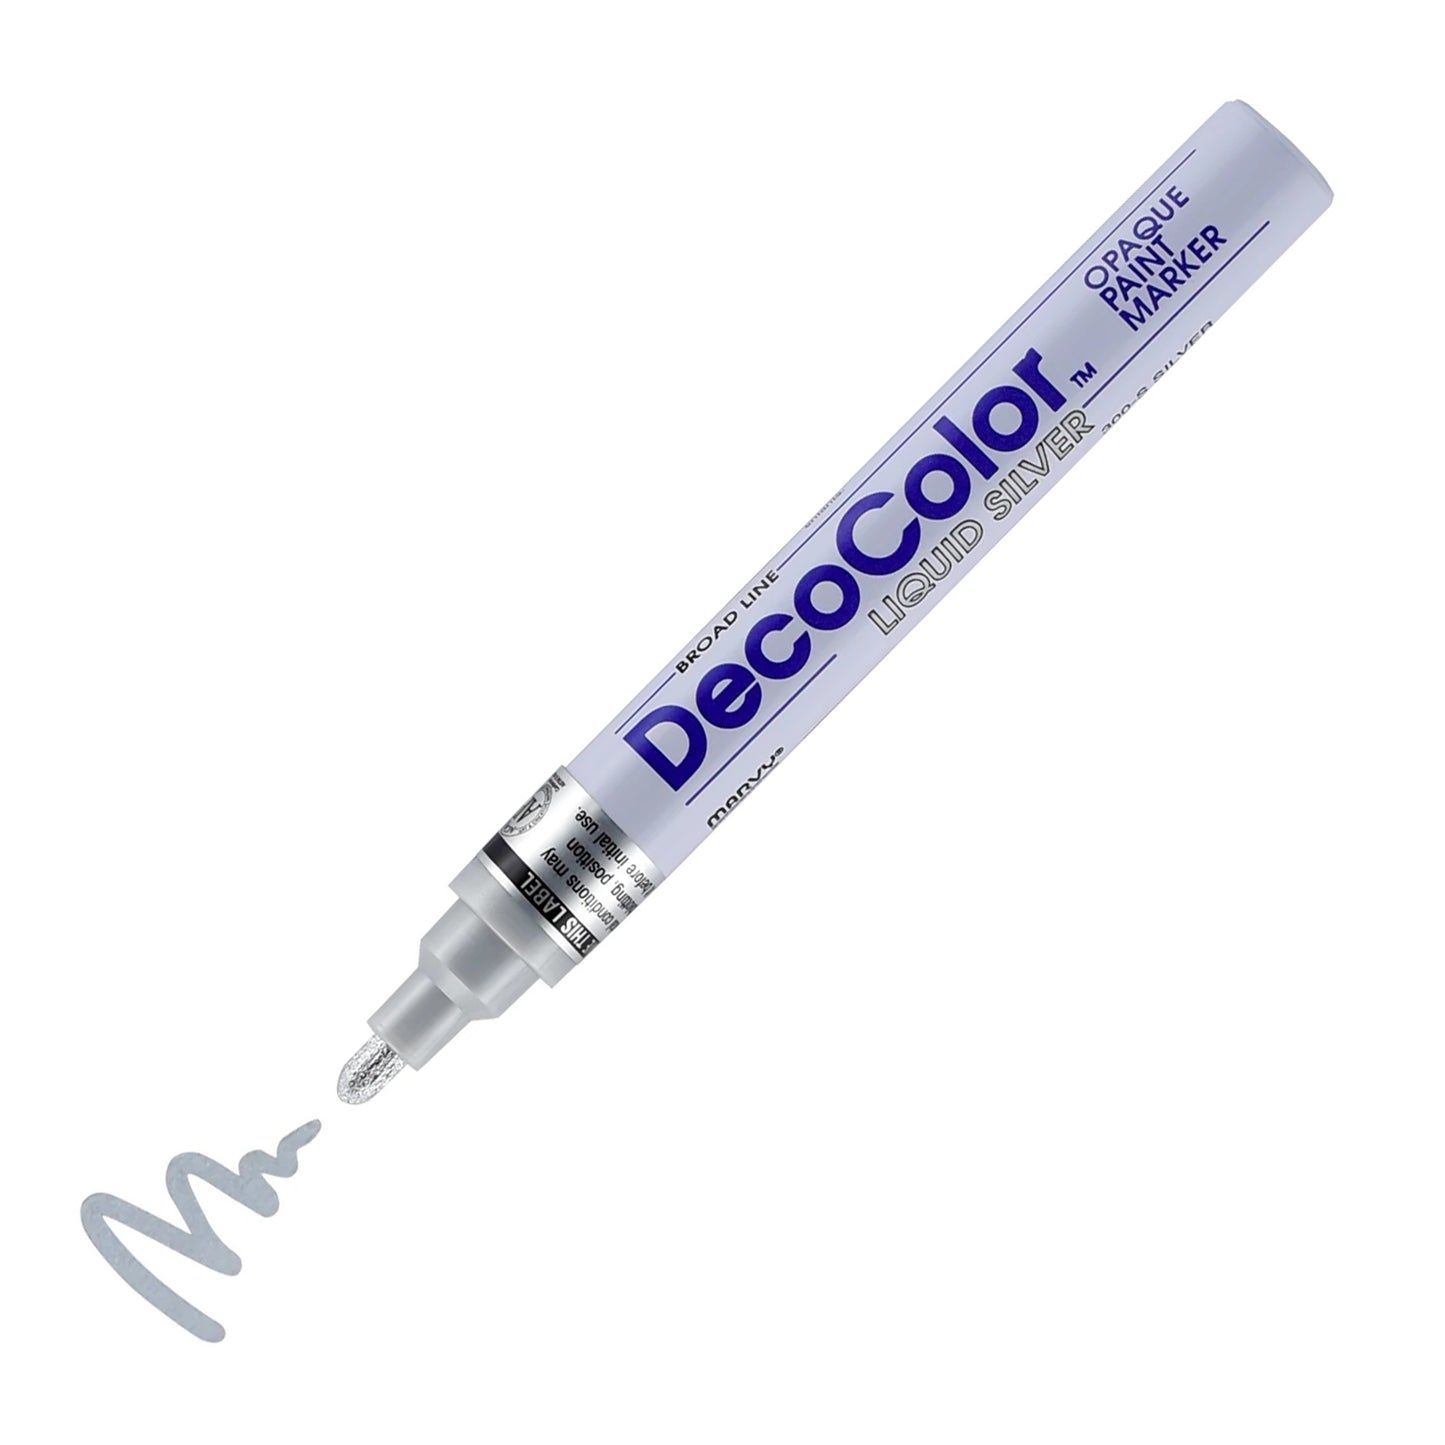 Decocolor Paint Marker, 6mm Broad Bullet Tip